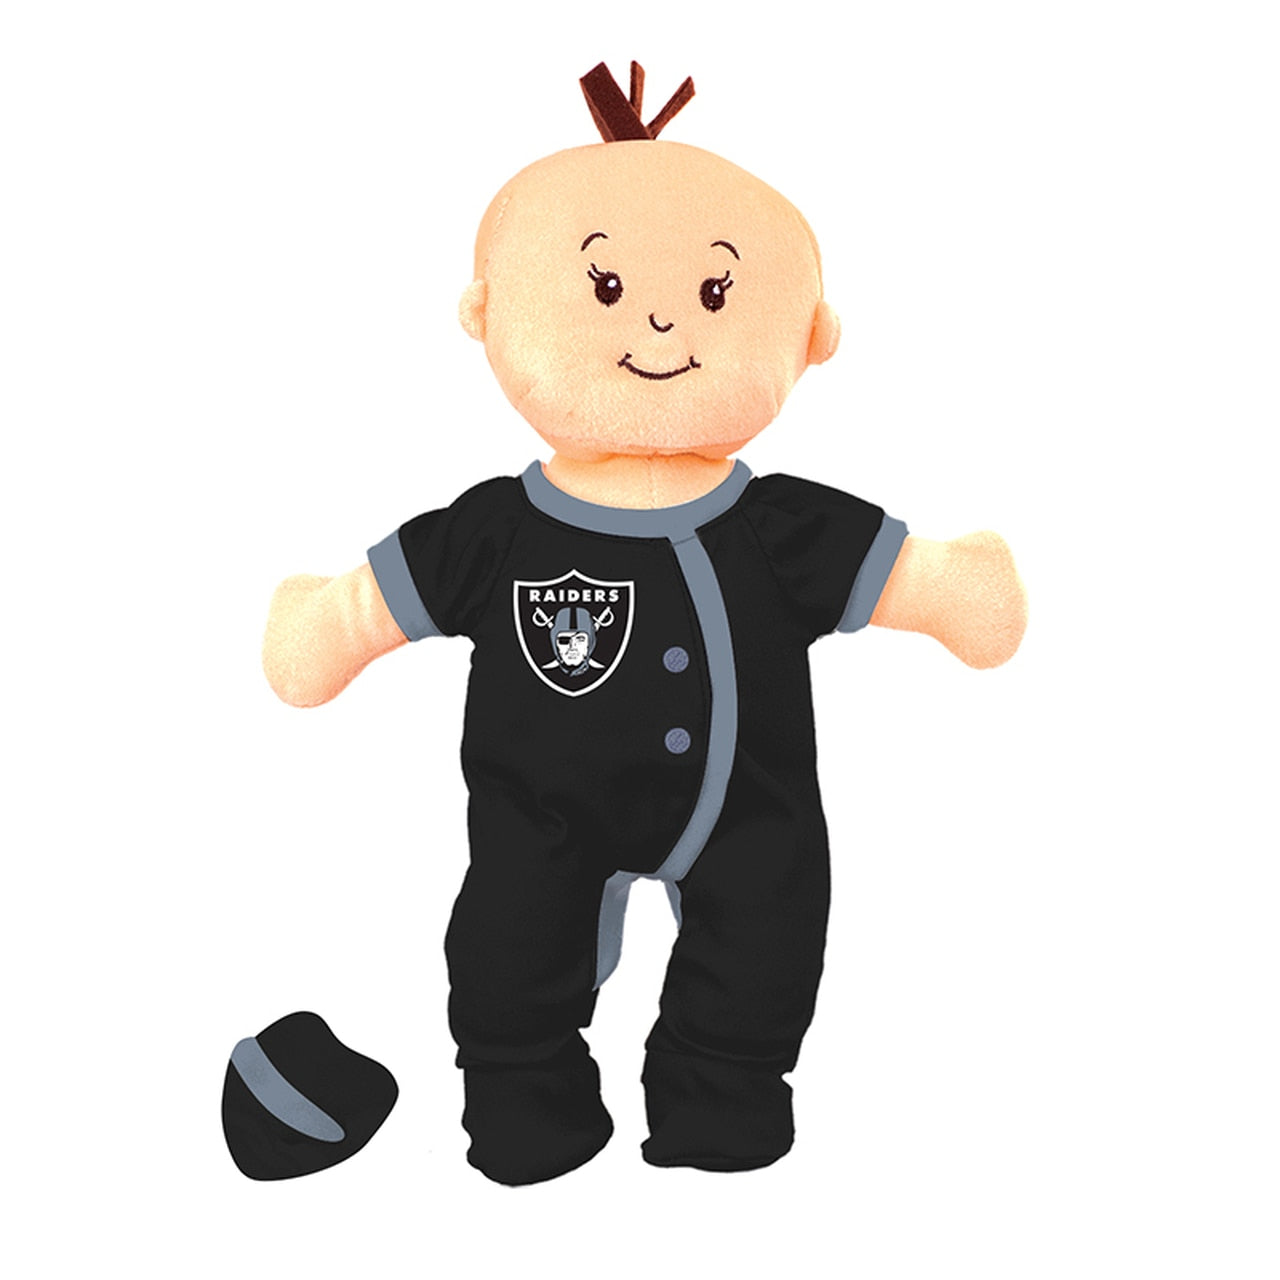 Oakland Raiders Wee Baby Fan Doll